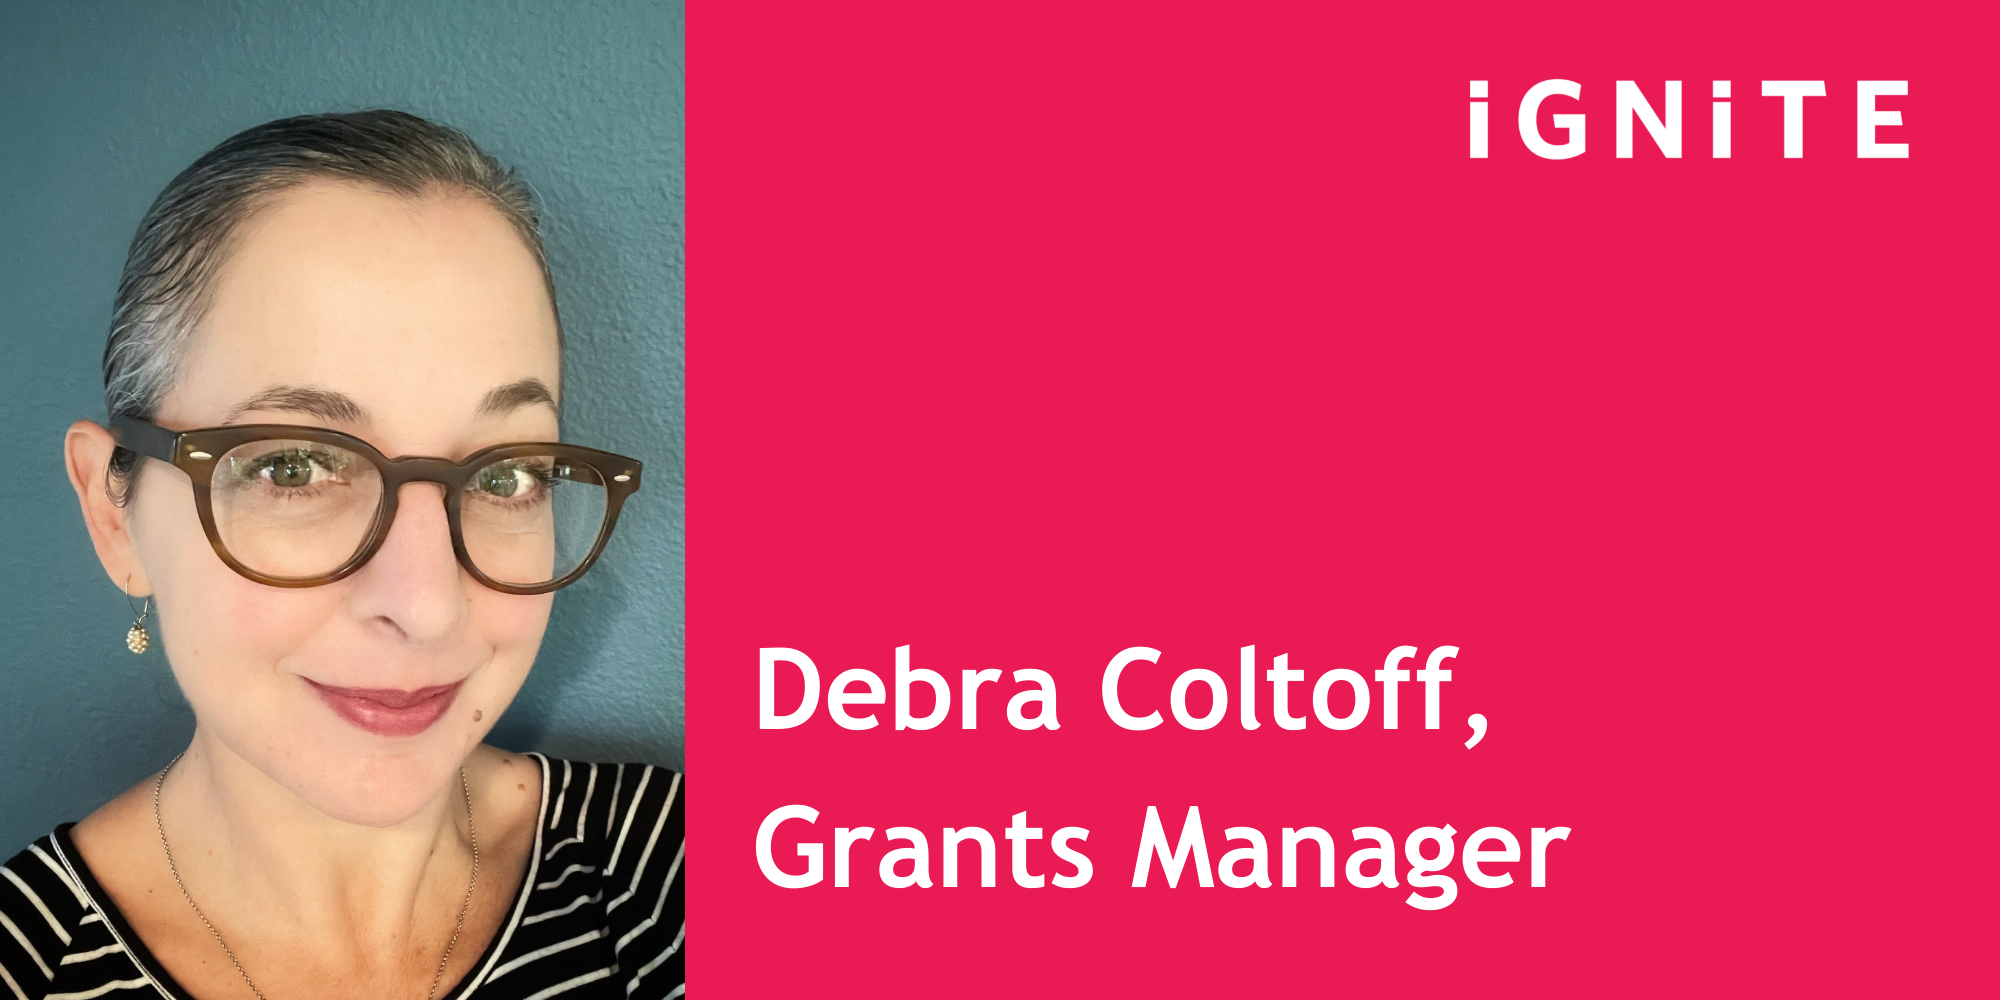 Debra Coltoff, Grants Manager